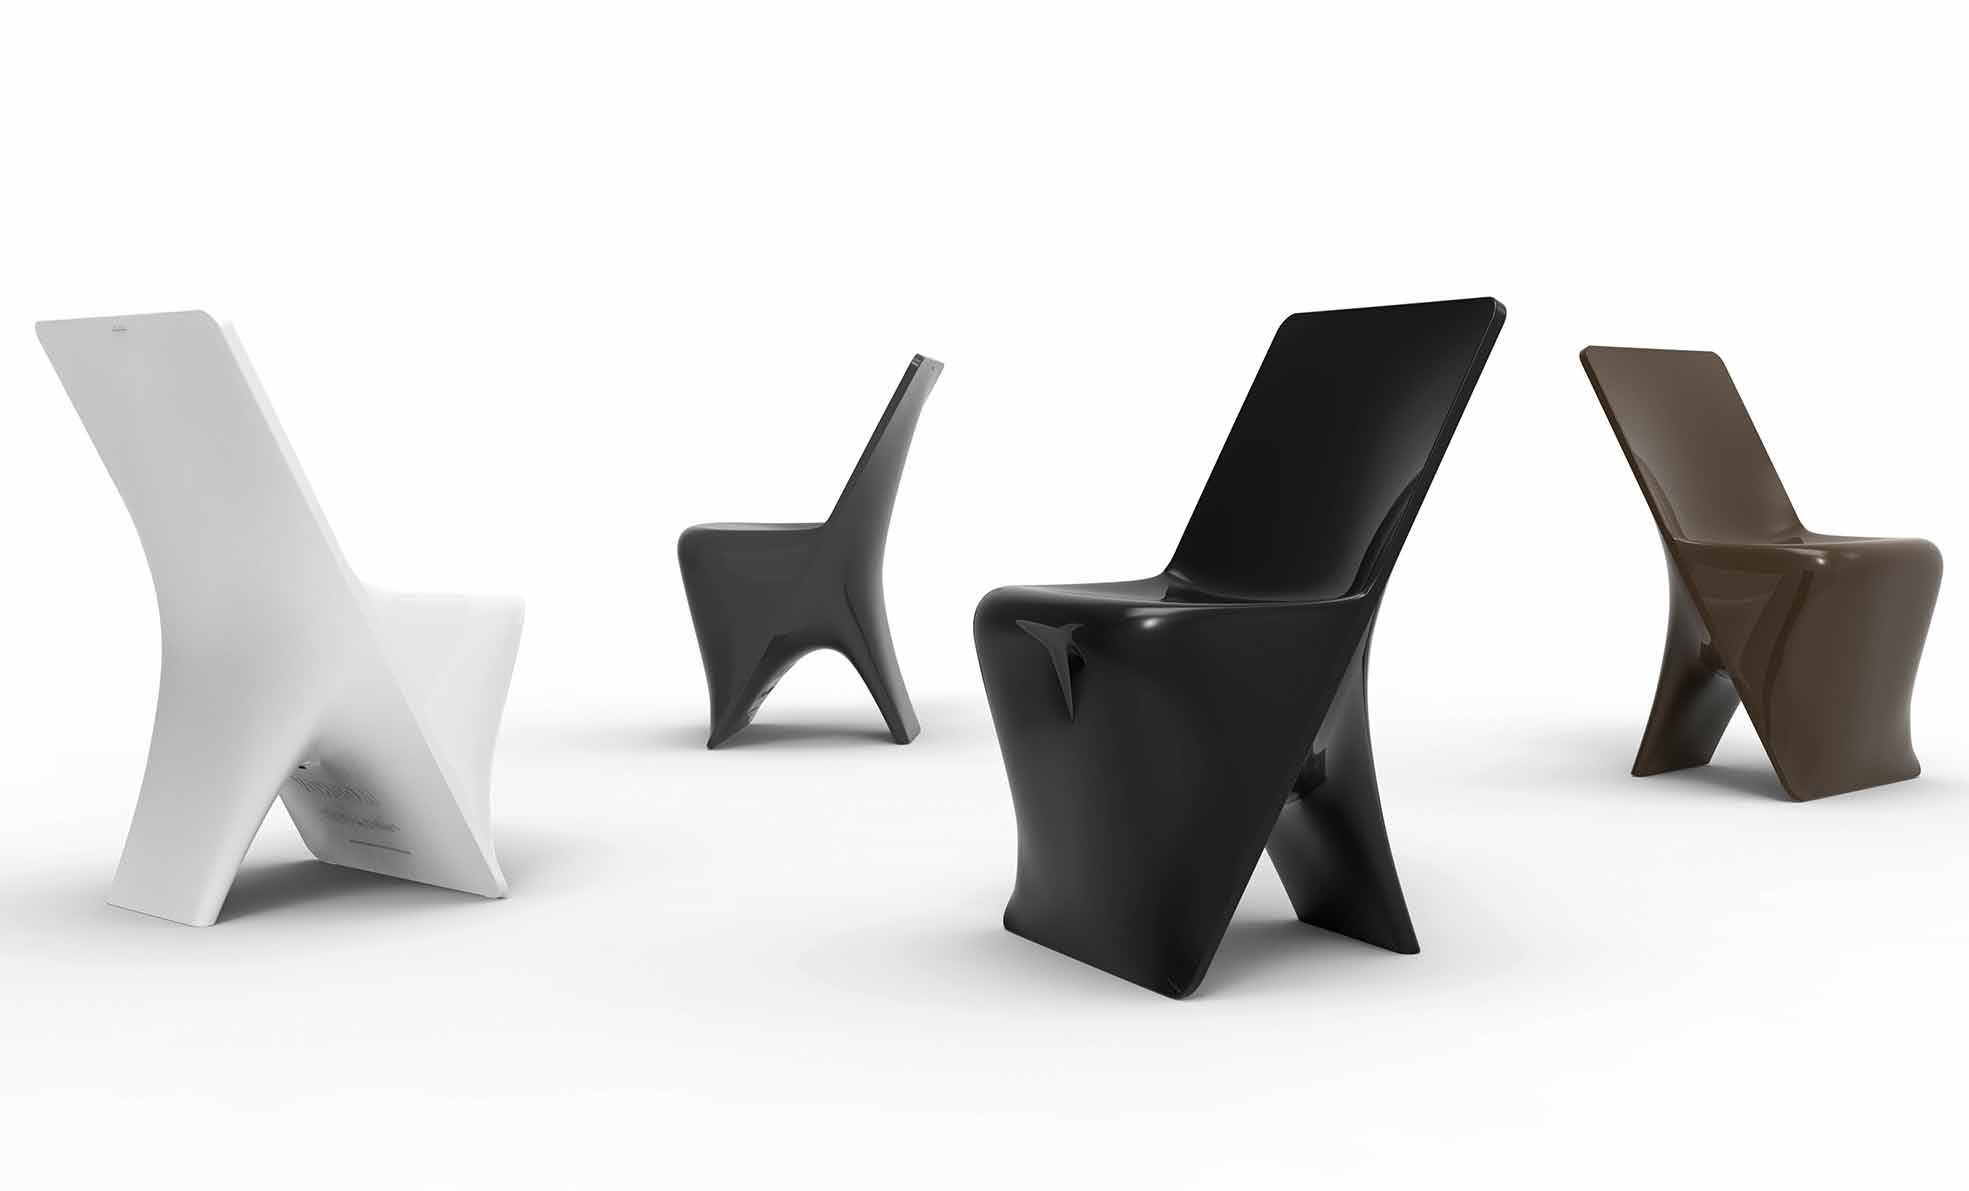 Sloppenwijk bord salon Sloo stoel in polyethyleen van Vondom, modern ontwerp voor buiten